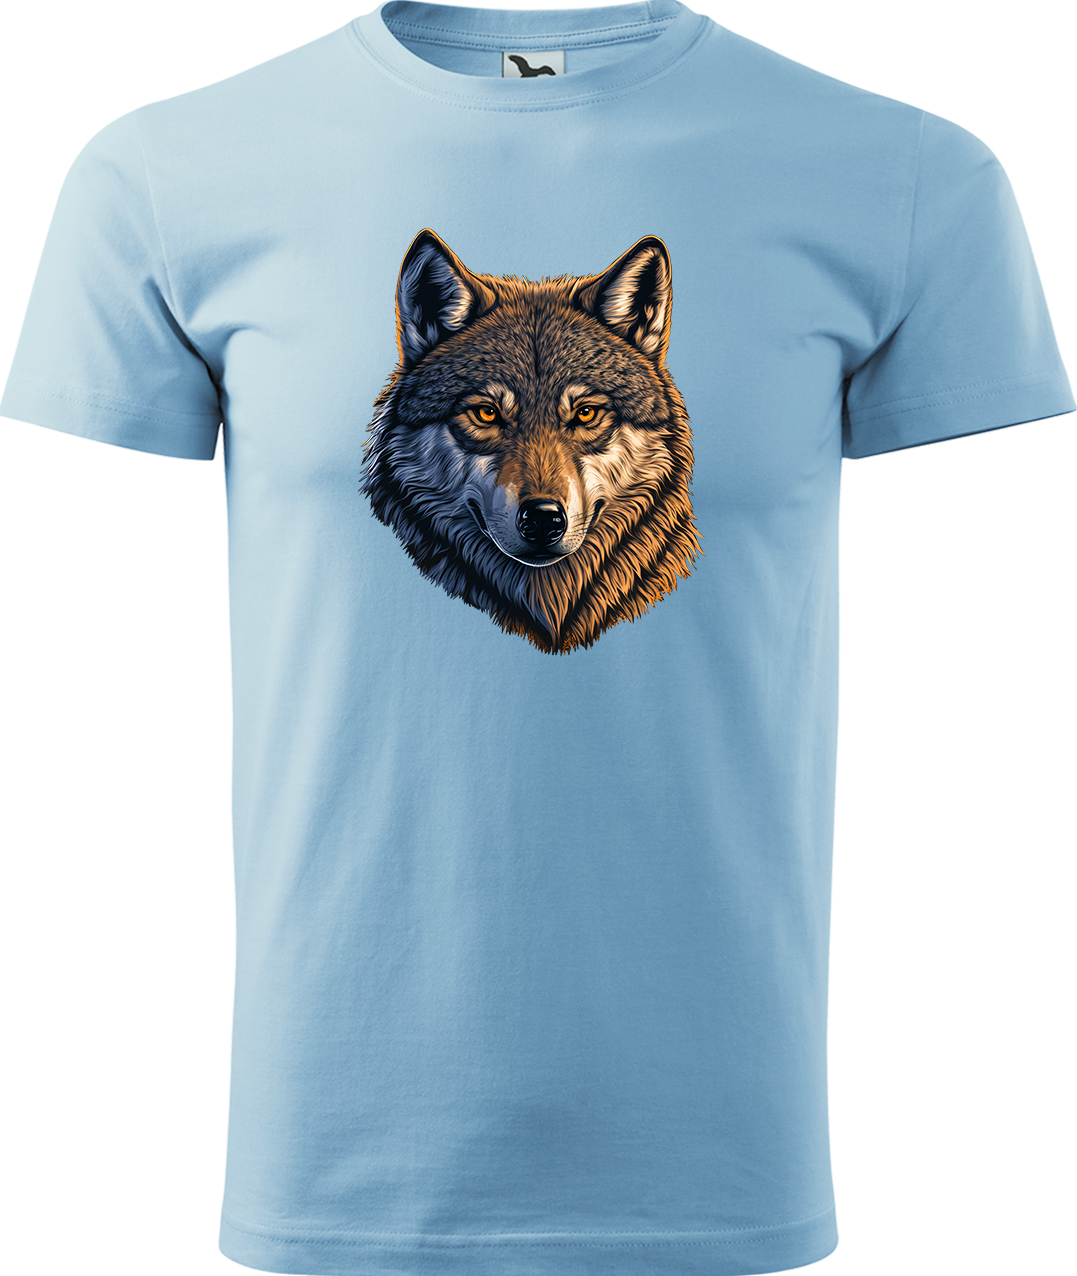 Pánské tričko s vlkem - Hlava vlka Velikost: XL, Barva: Nebesky modrá (15), Střih: pánský